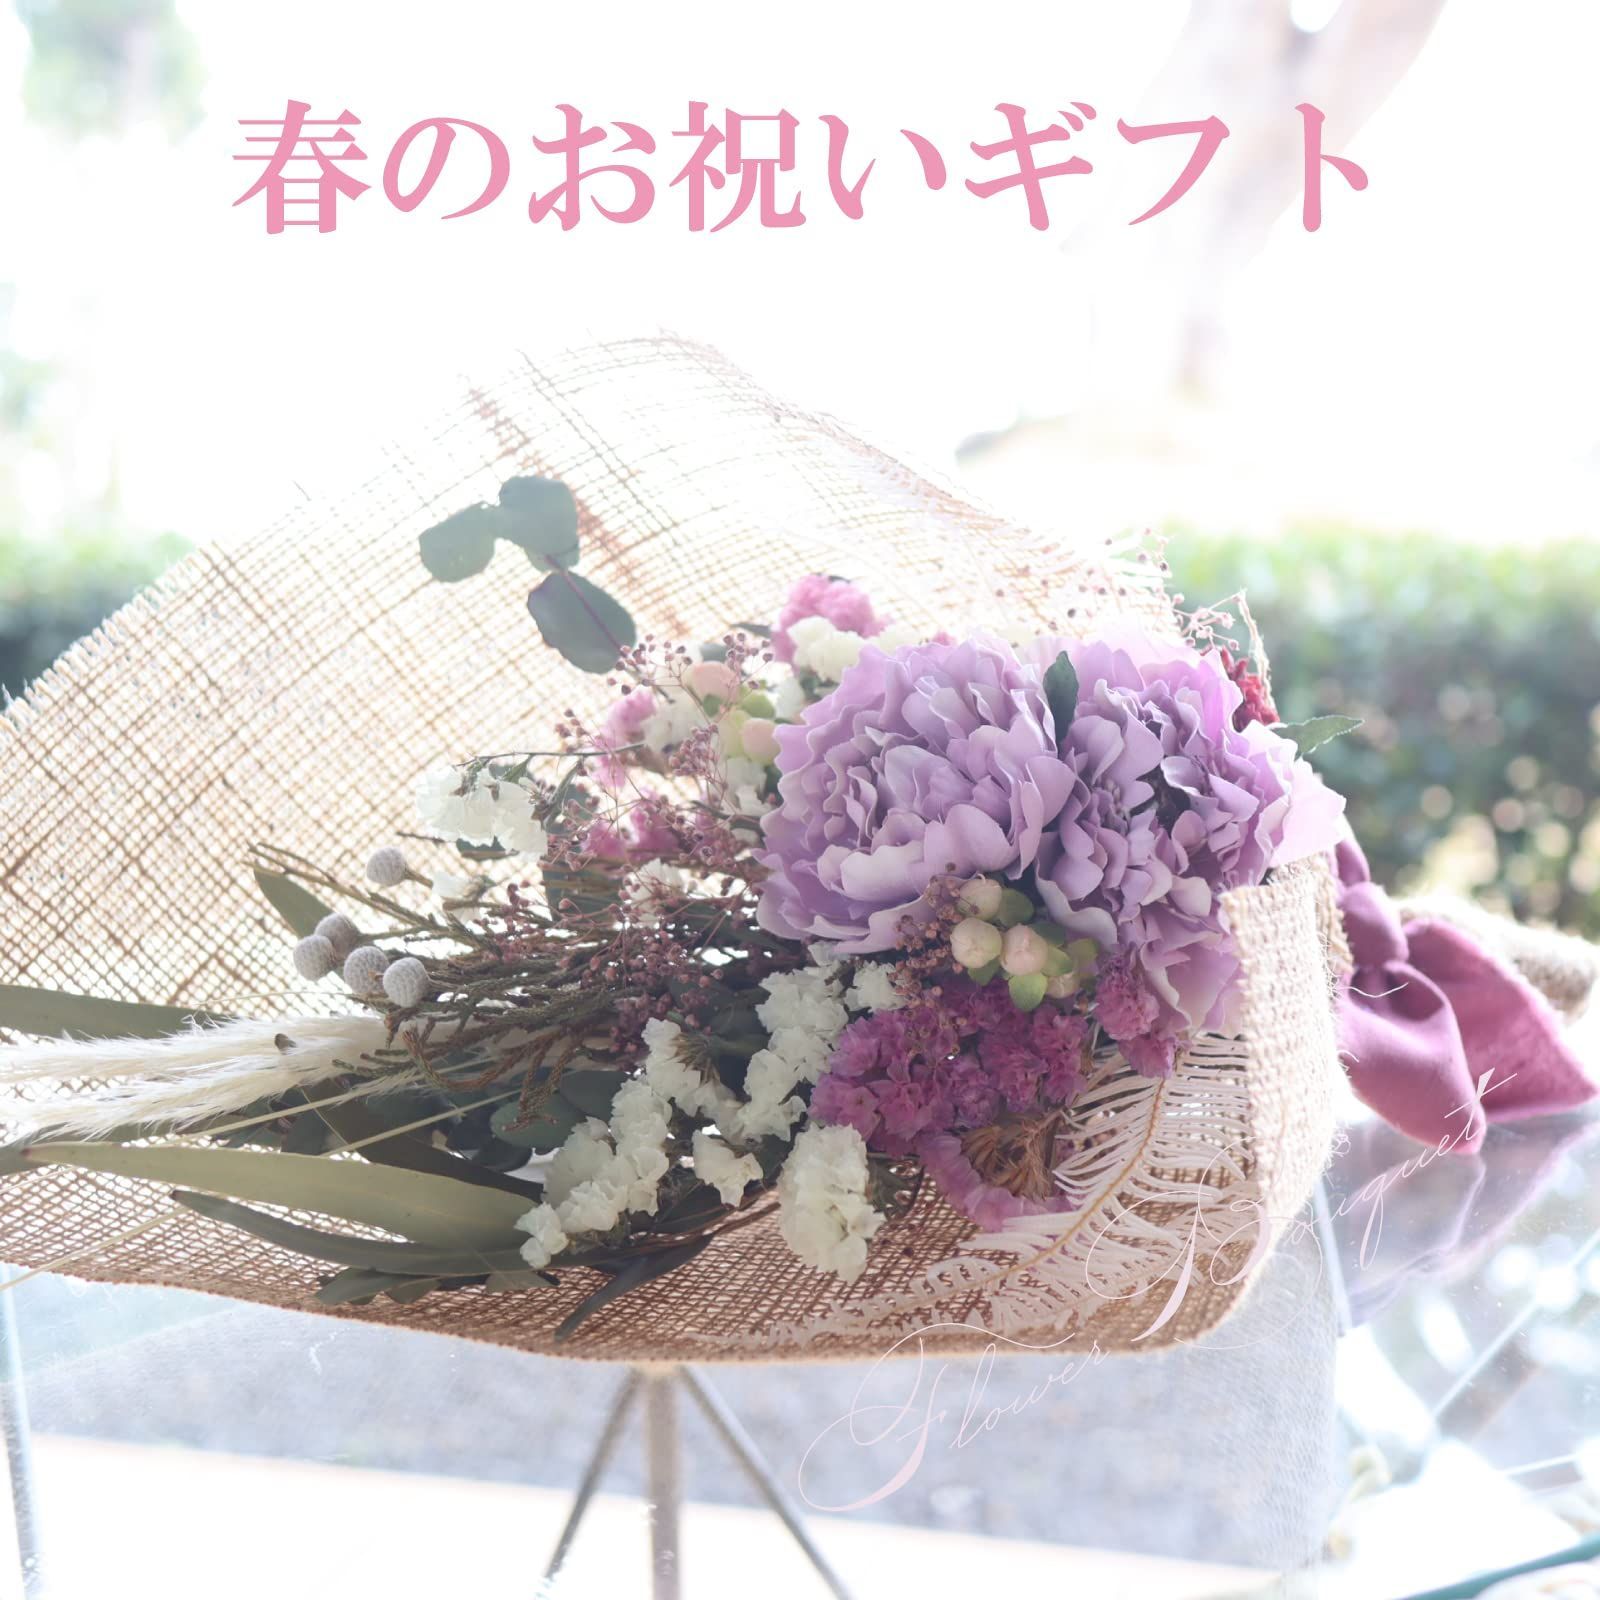 通販専売 Sakuya(咲屋) スワッグ プリザーブドフラワー ドライフラワーブーケ フラワー 花束 ヌーディー 花束、アレンジメント 